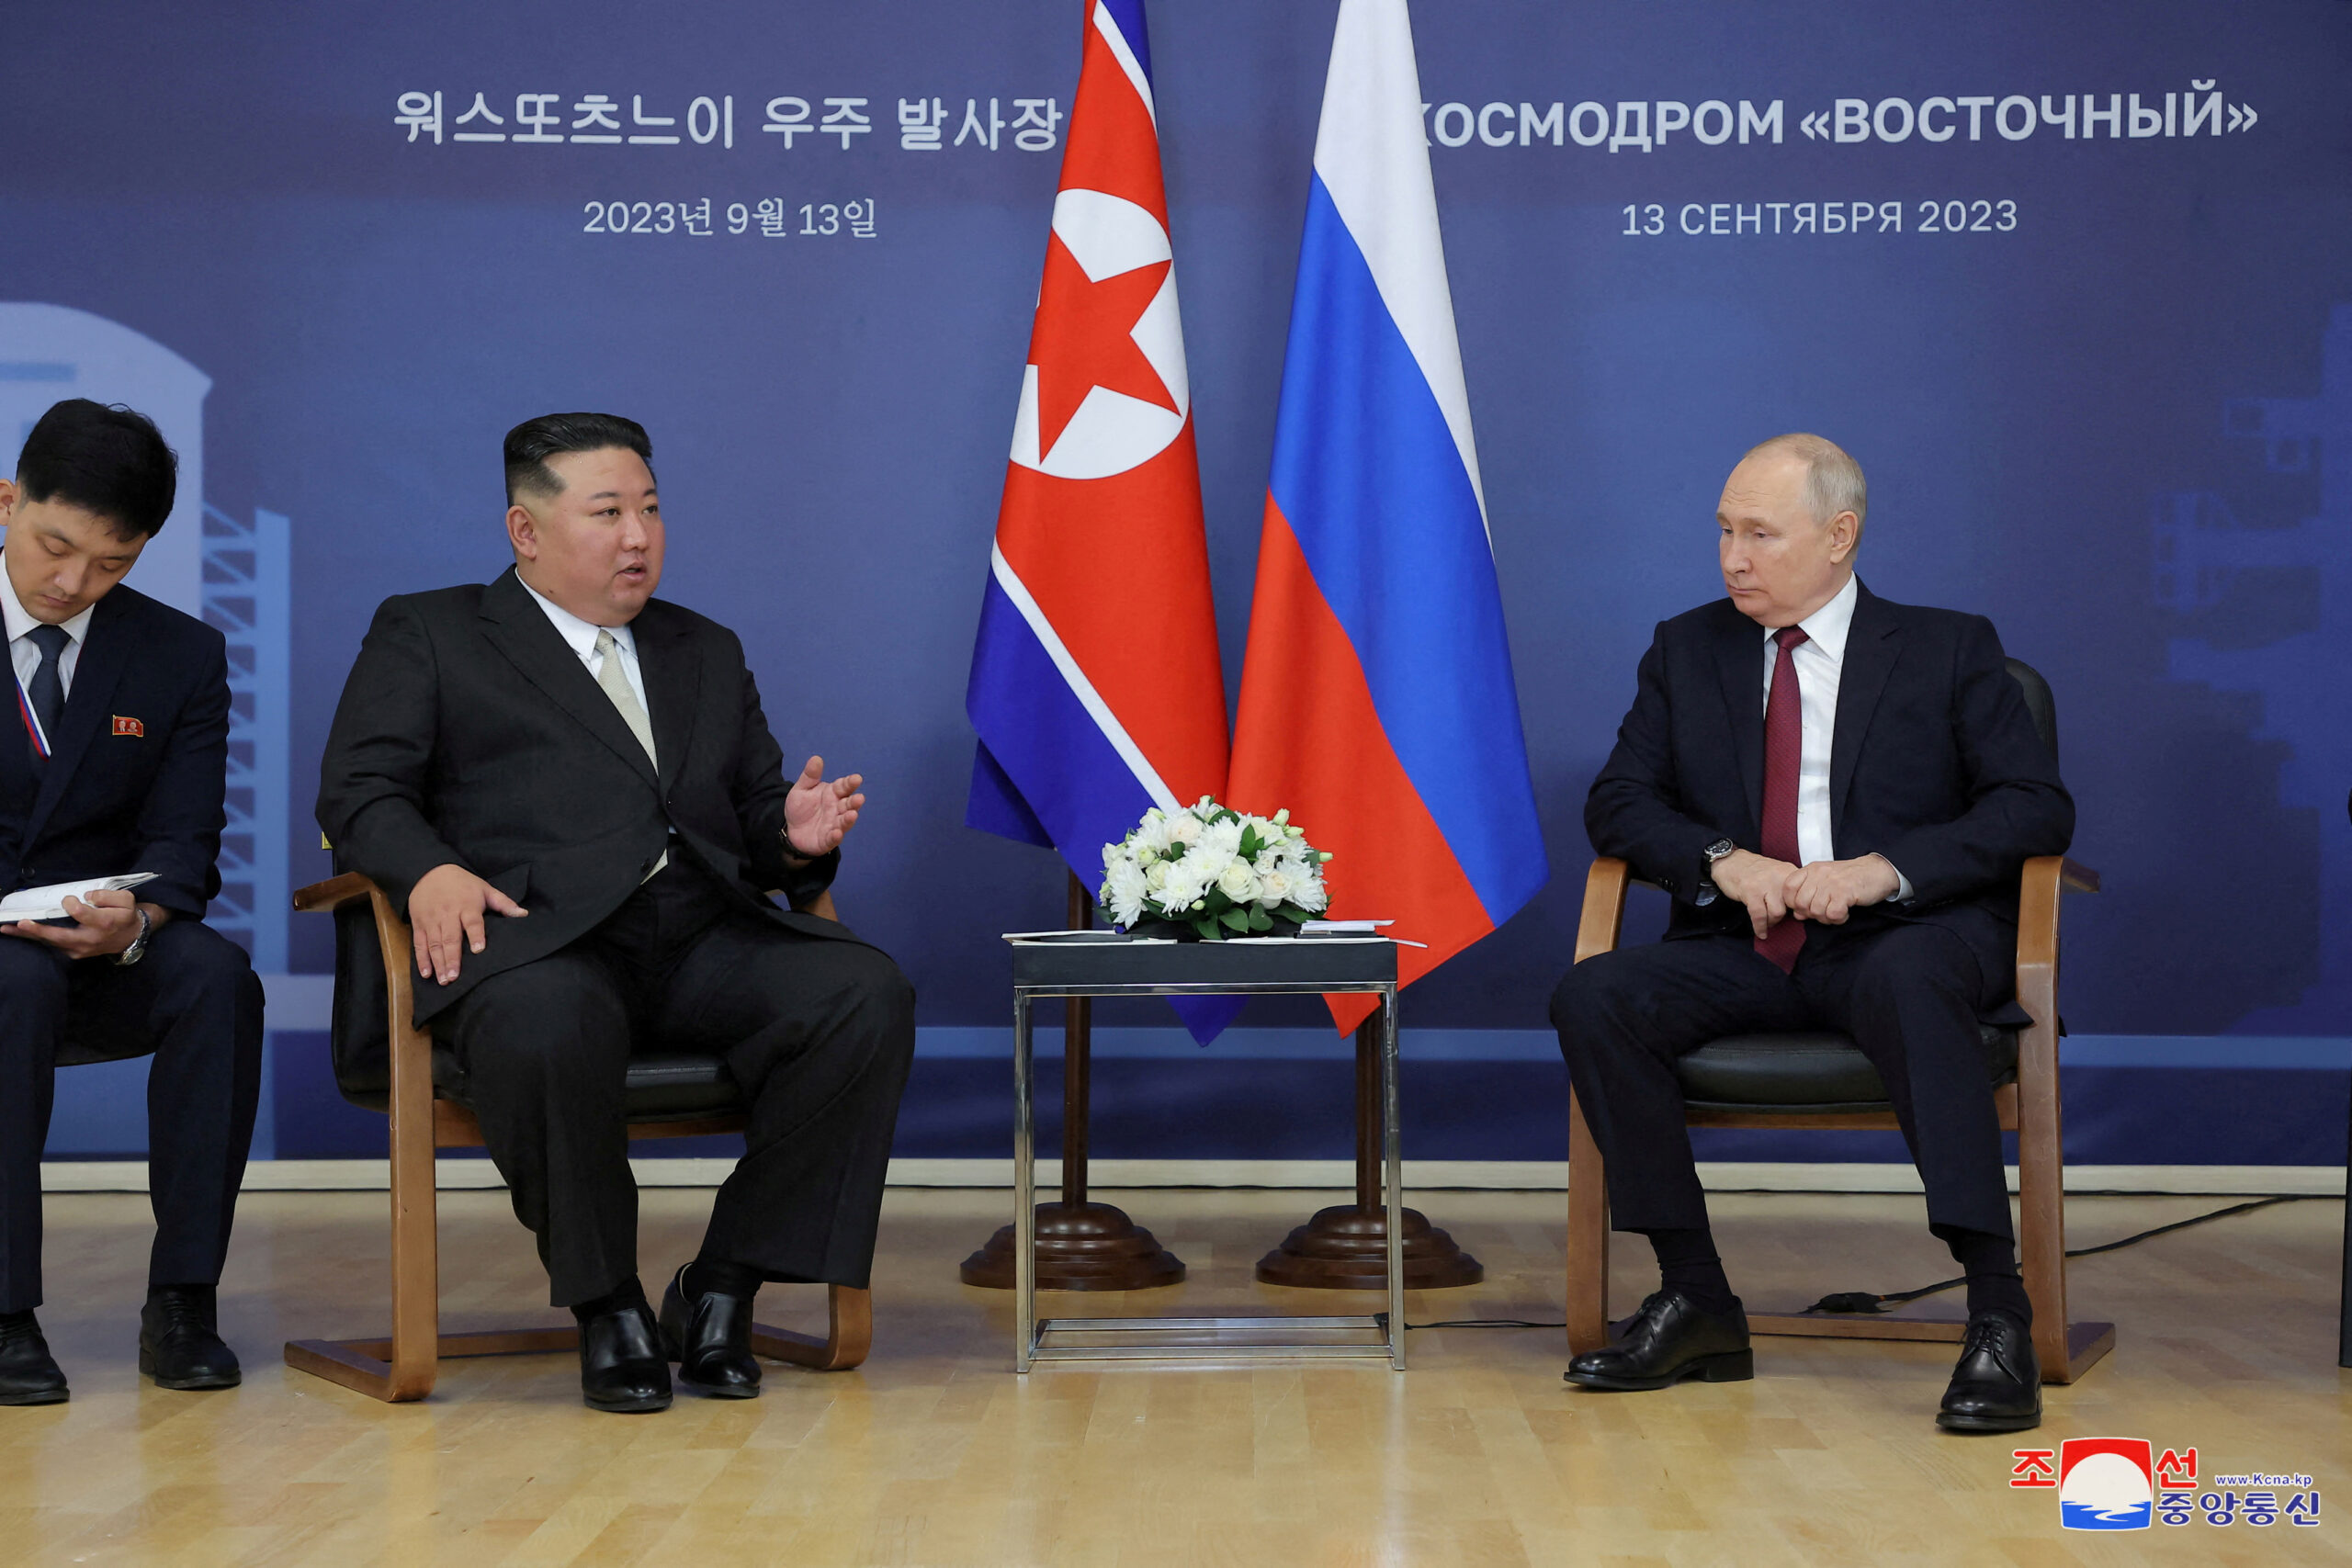 Μετά το βέτο, η Ρωσία καλεί τη Δύση να μη «στραγγαλίζει» τη Βόρεια Κορέα